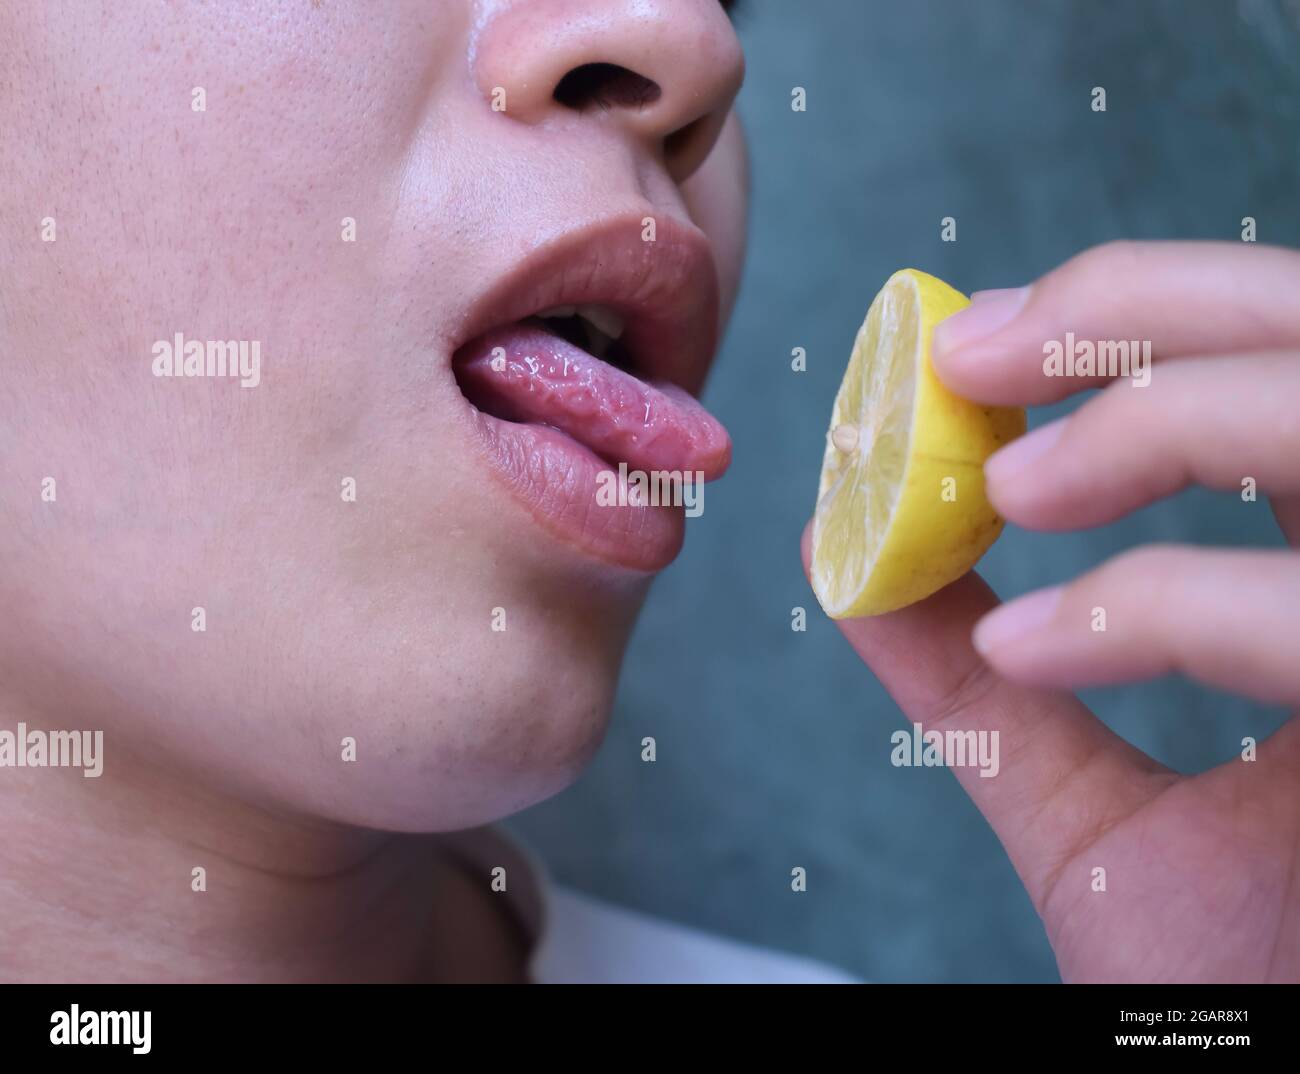 Sud-est asiatico, cinese e Myanmar giovane uomo con influenza fredda ottiene la perdita di gusto. Assaggia il limone mentre si trova a casa. Vista in primo piano. Foto Stock